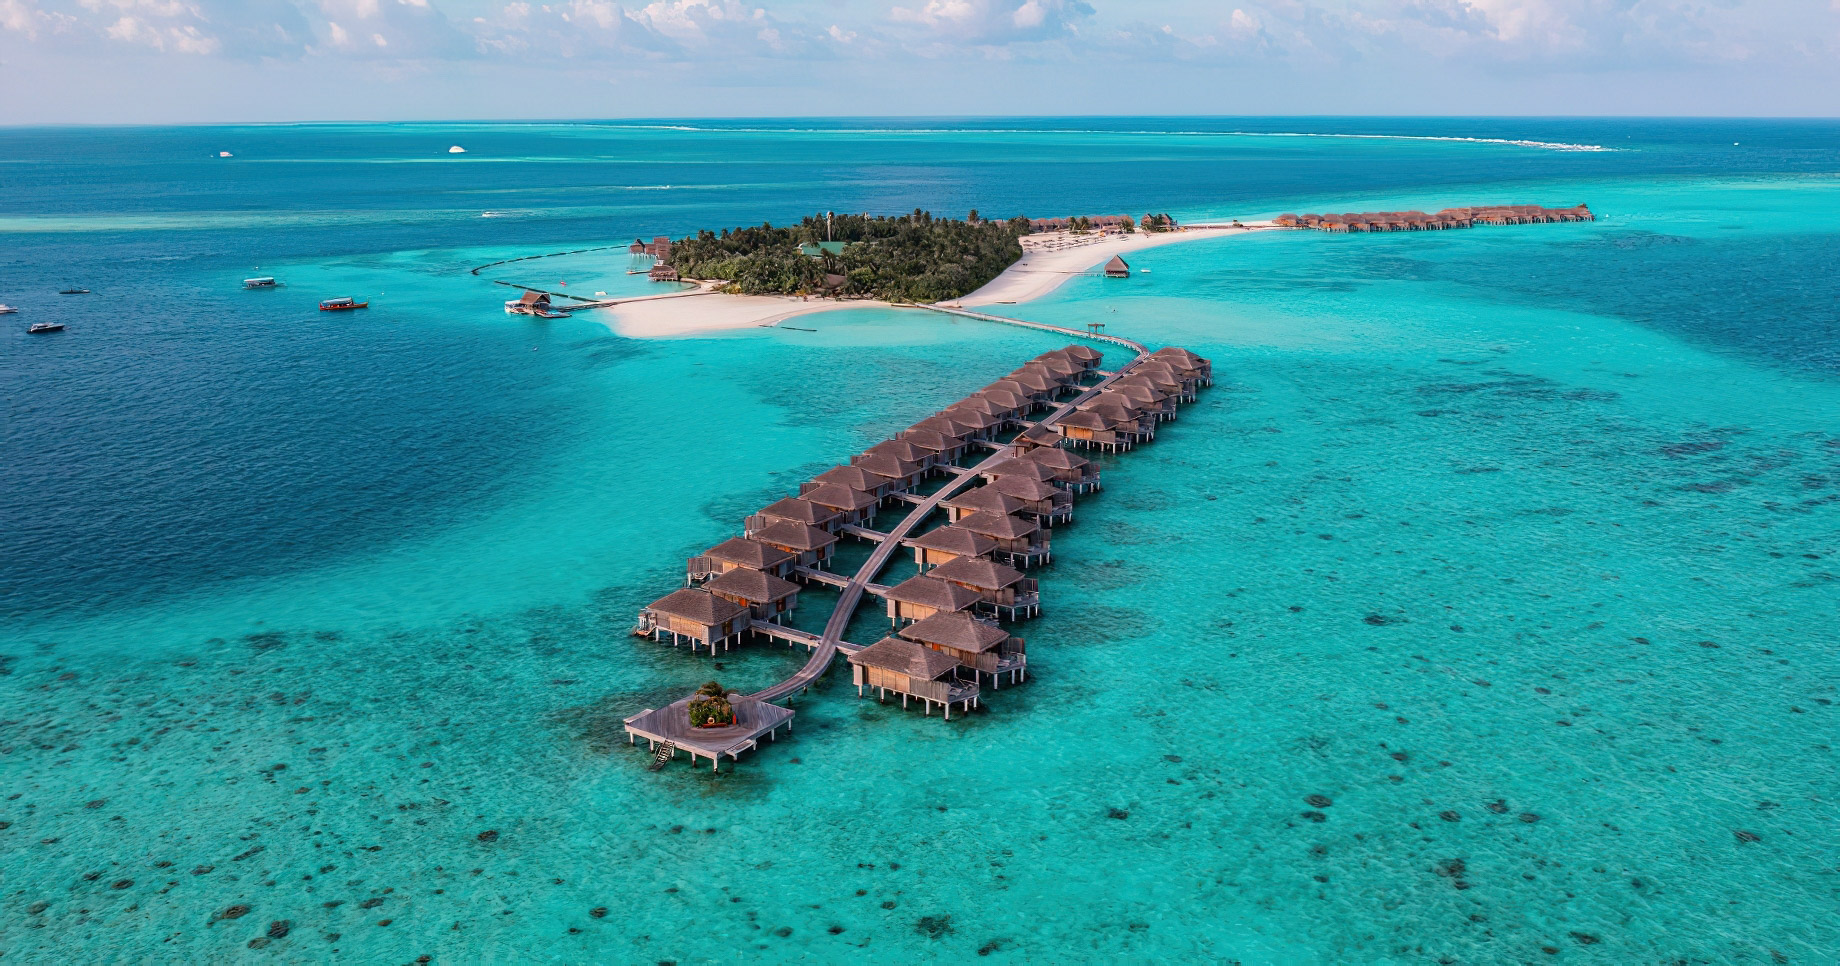 Constance Moofushi Resort – South Ari Atoll, Maldives – Water Villas Aerial View